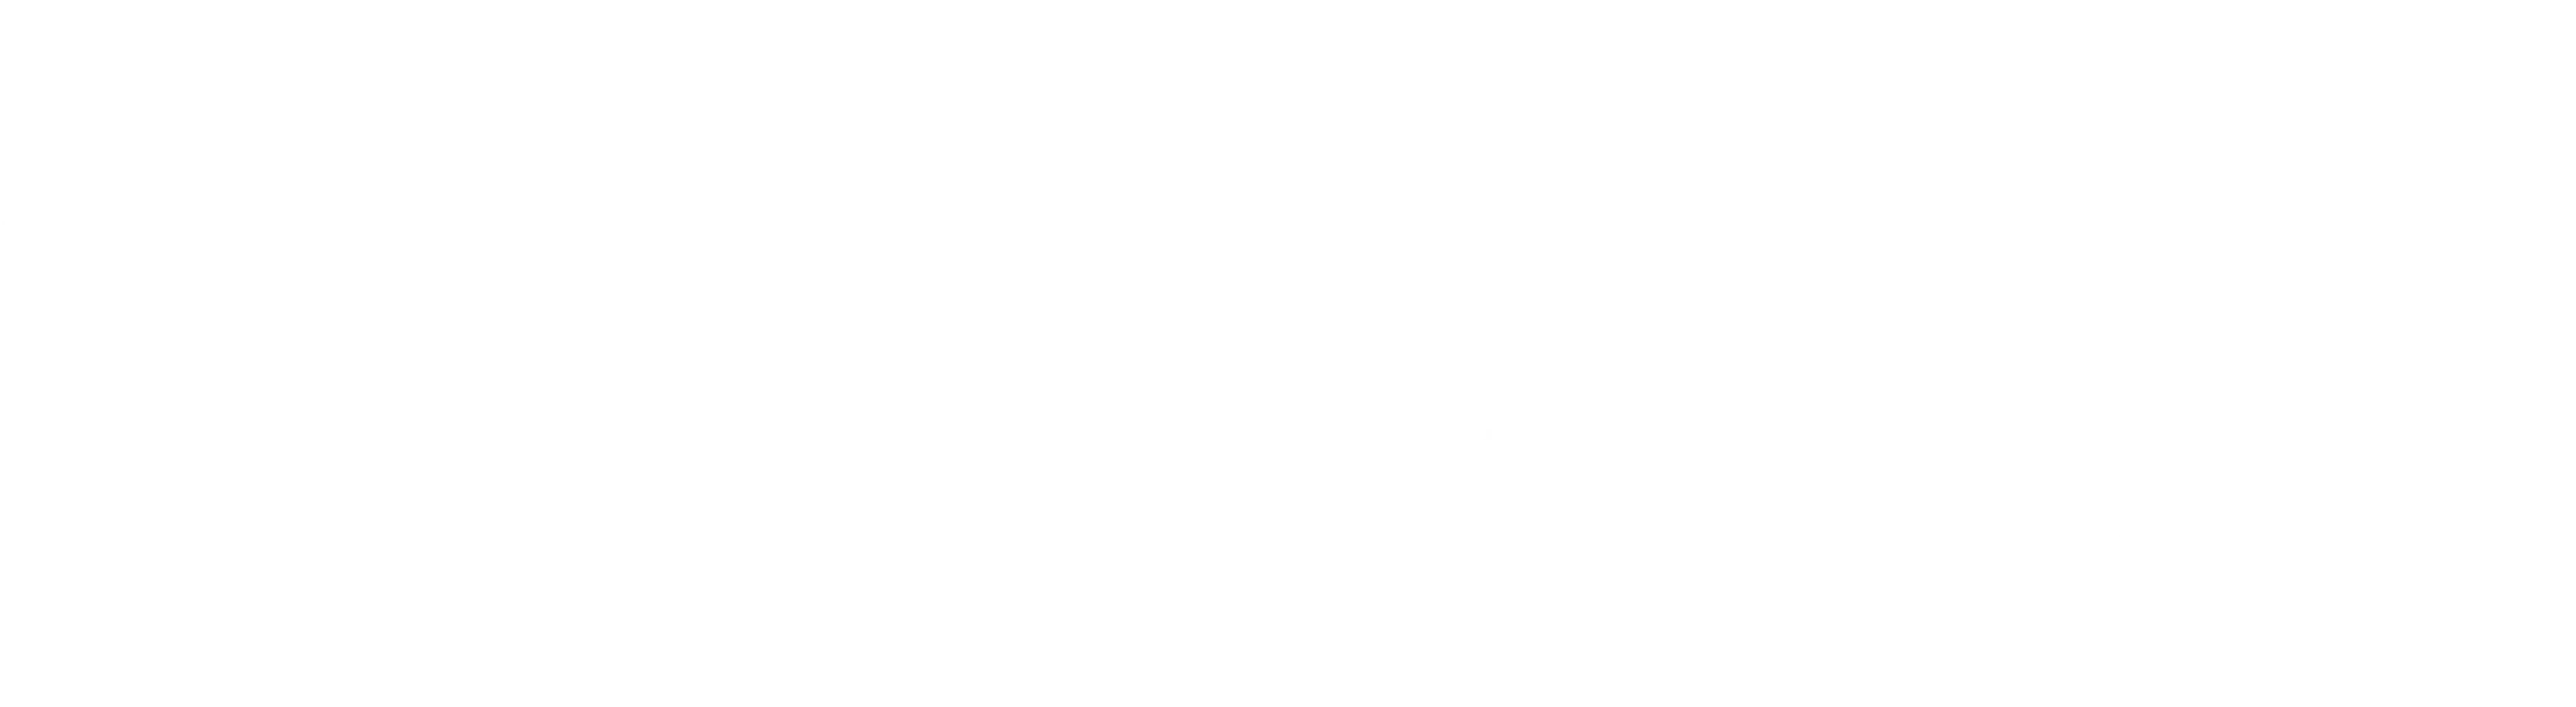 Cap Plus Technologies